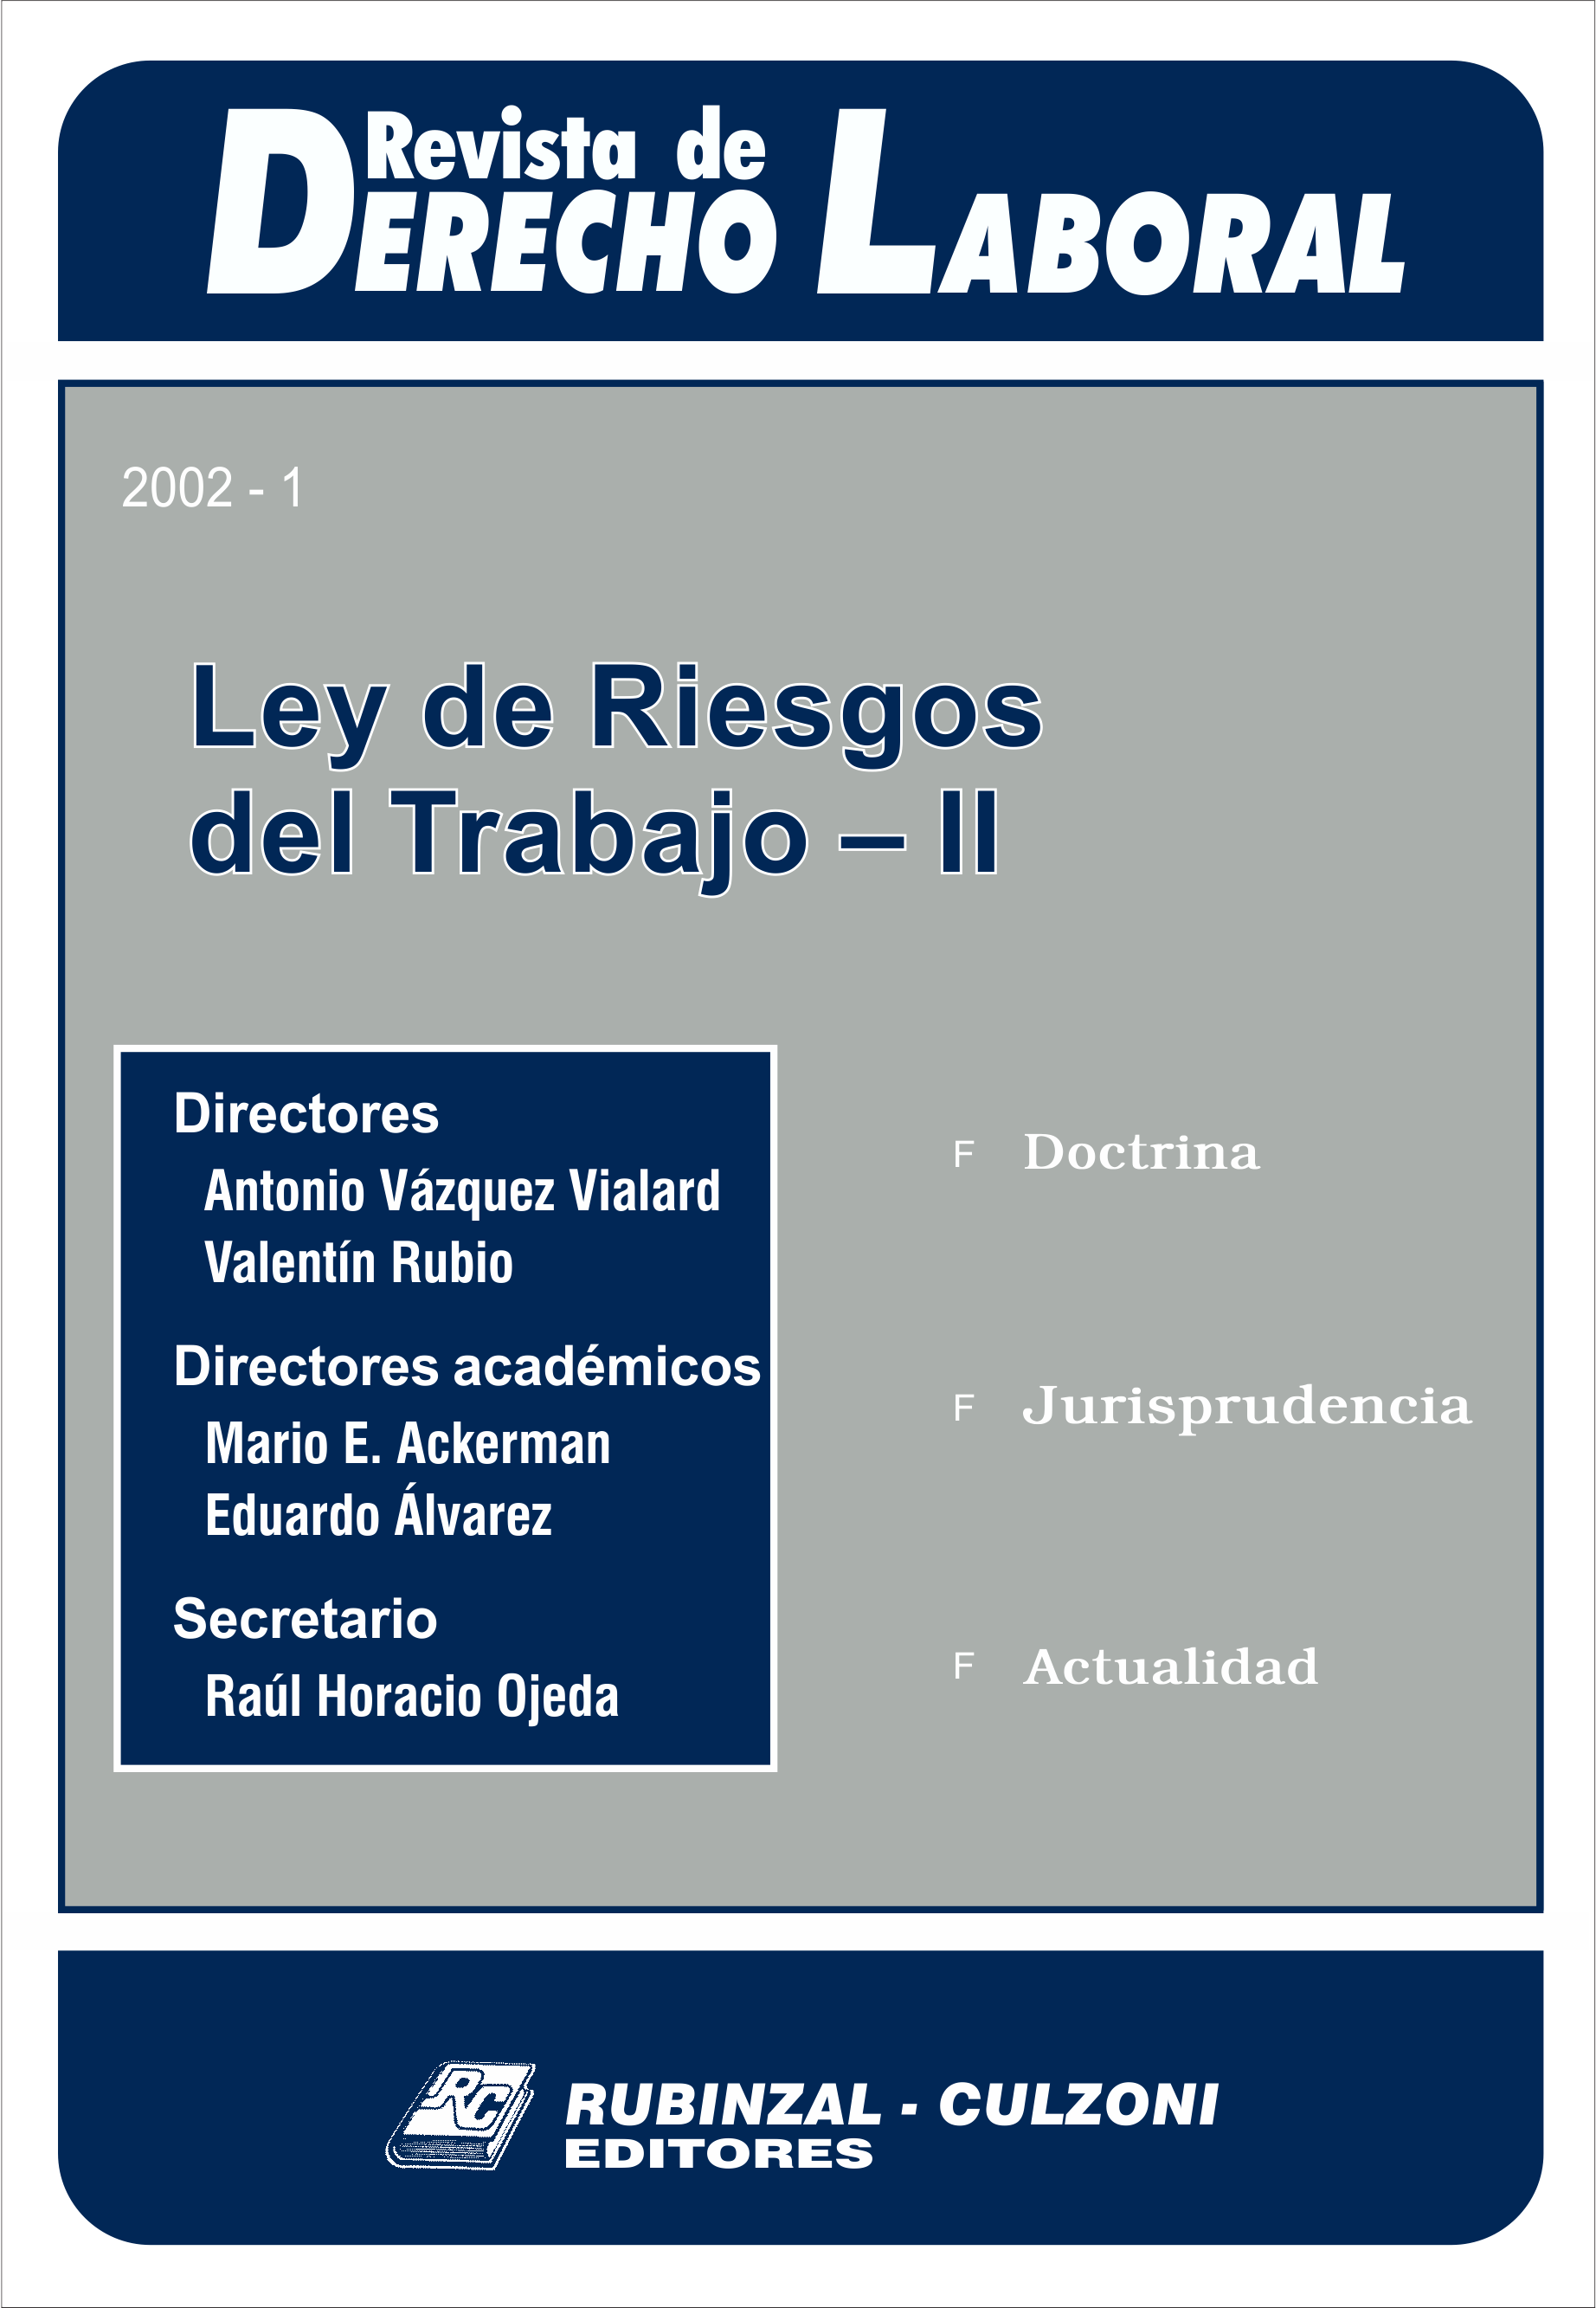 Revista de Derecho Laboral - Ley de Riesgos del Trabajo II.